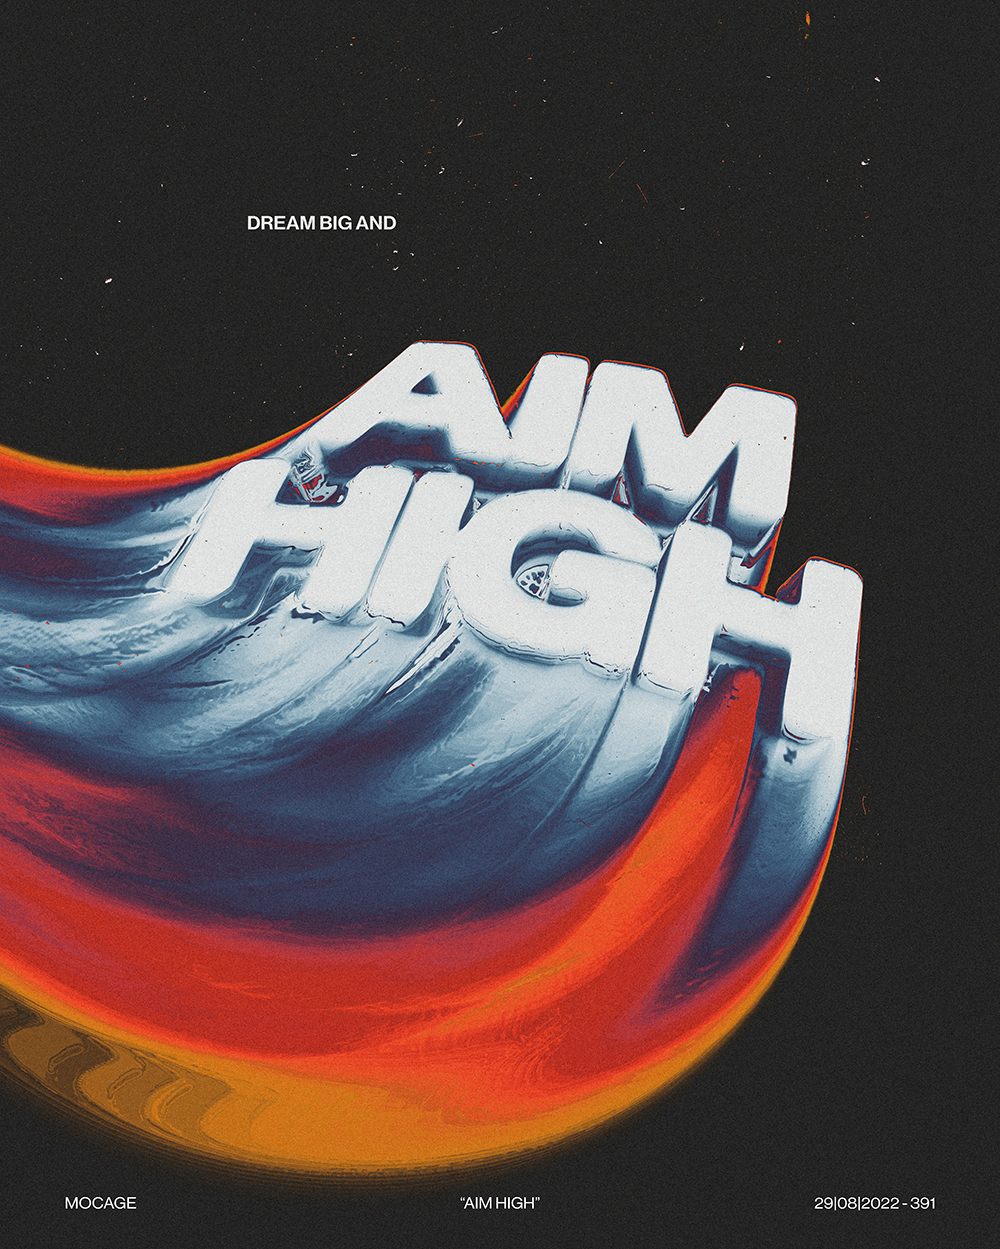 “Aim high”